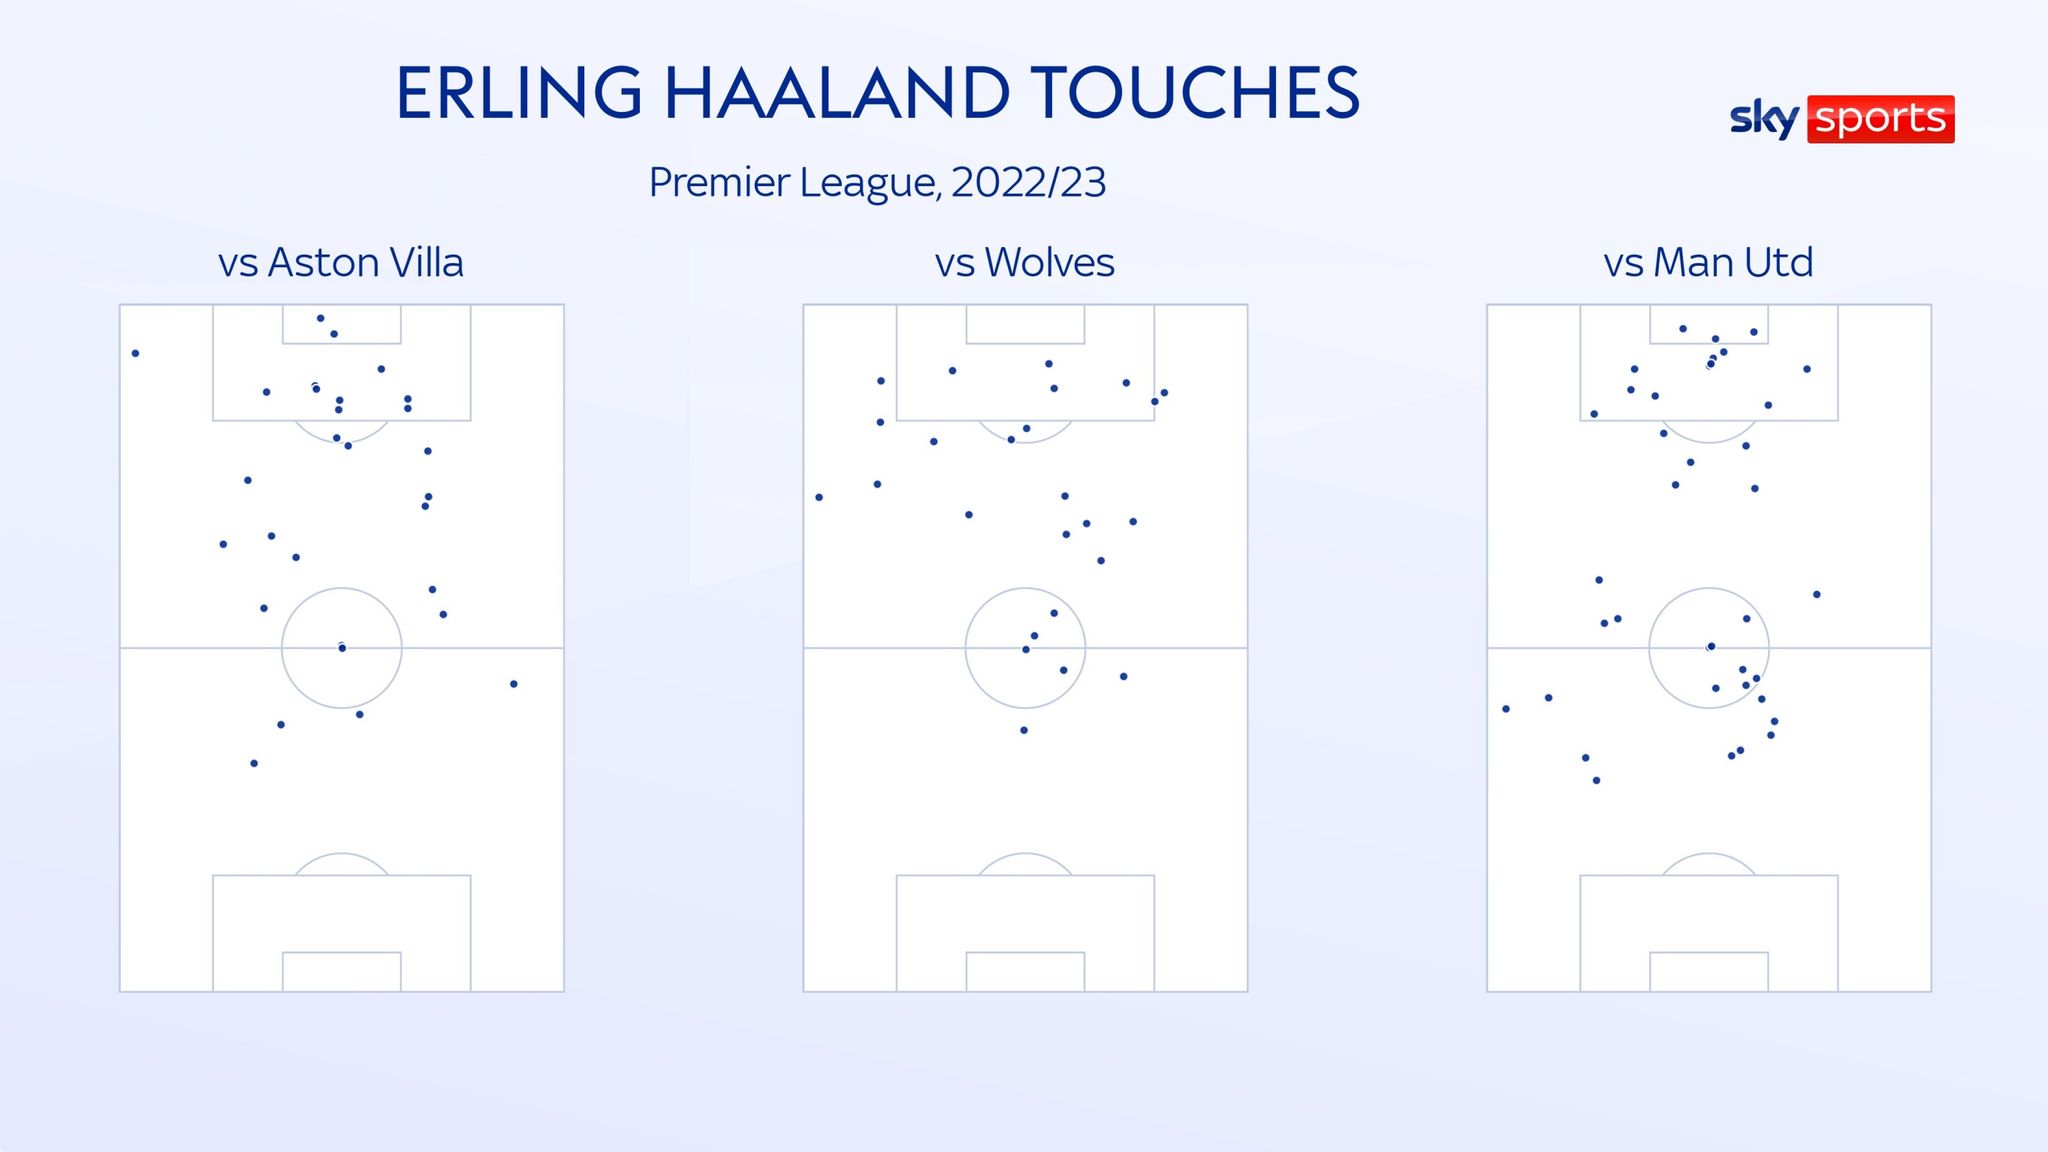 Erling Haaland Man City striker tops Premier League scoring chart but